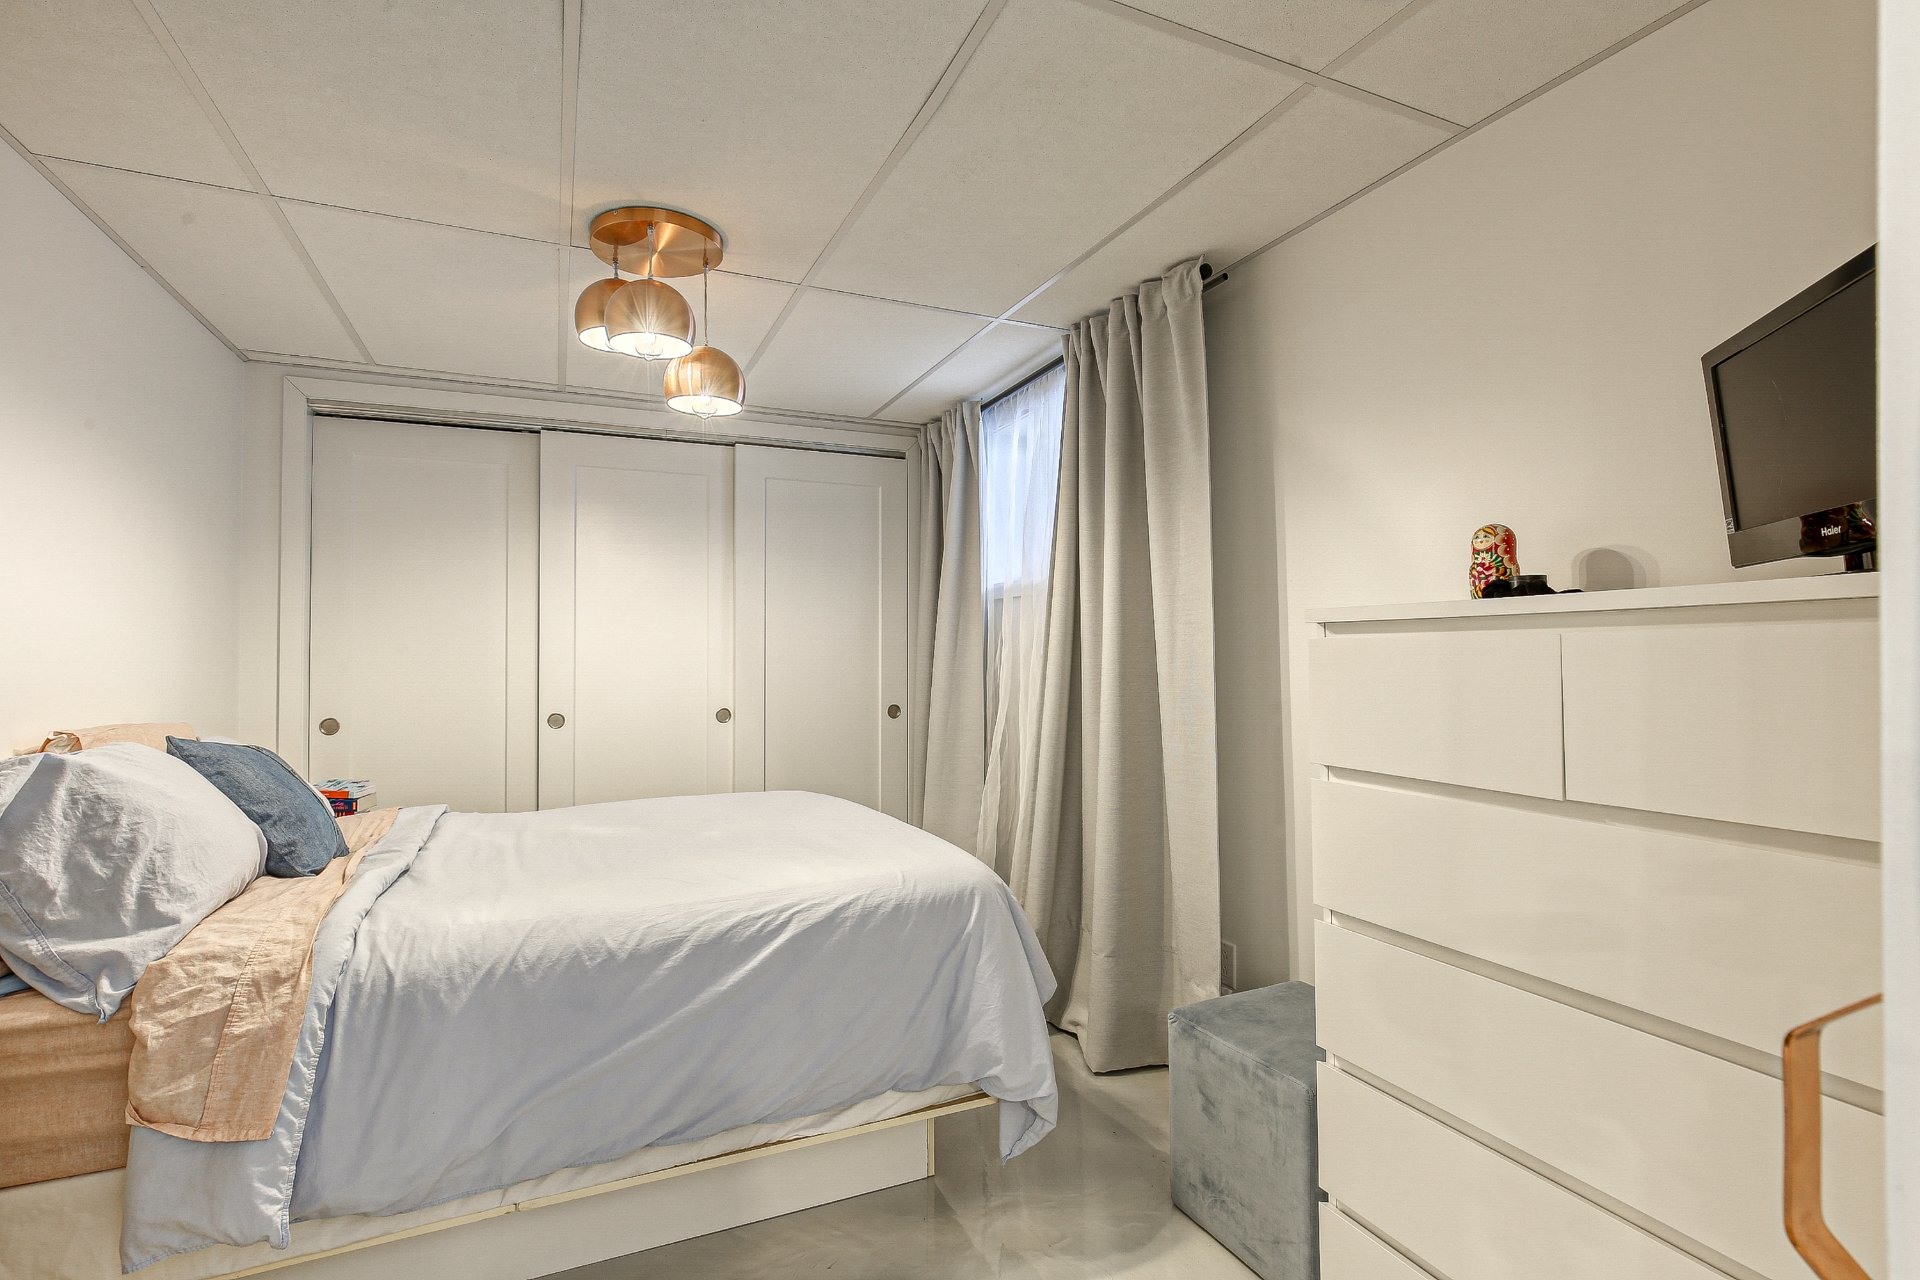 image 23 - Duplex En venta Villeray/Saint-Michel/Parc-Extension Montréal  - 5 habitaciones